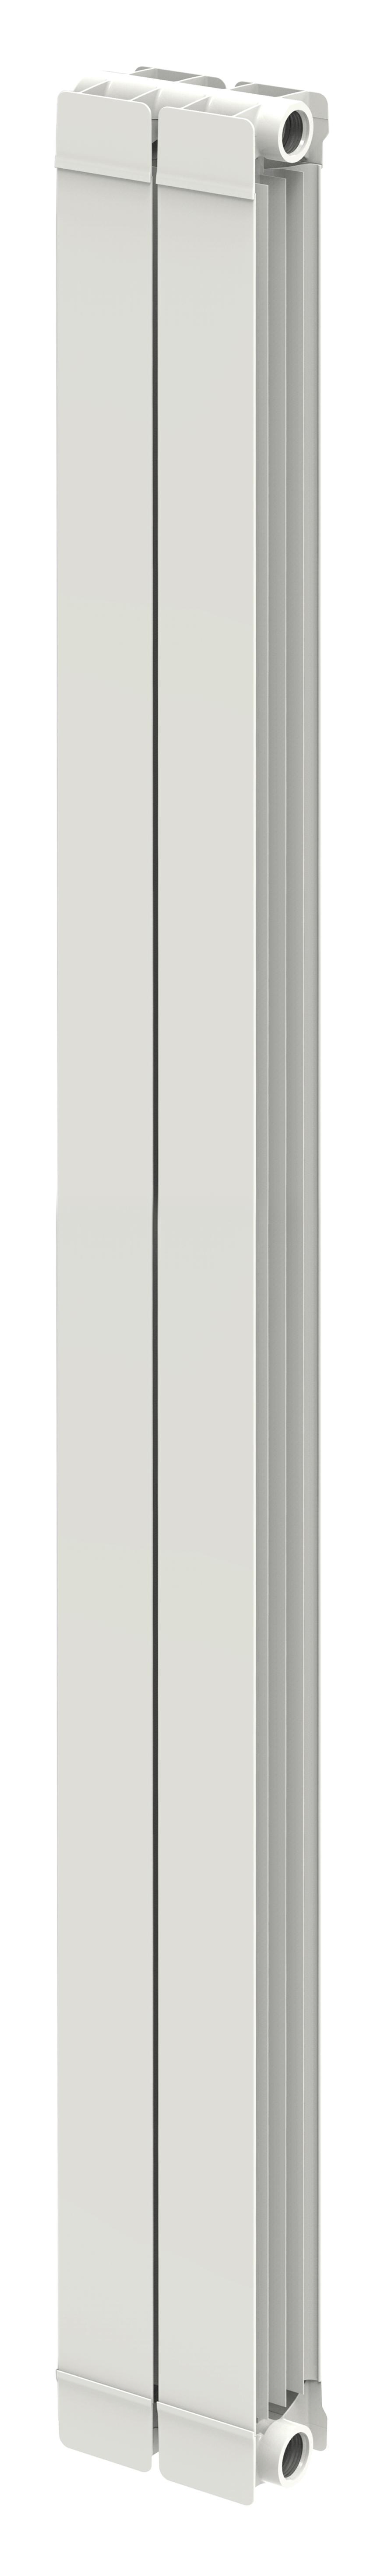 Radiateur d'eau TAL 2043mm 2 éléments avec la référence 16506020 de la marque FERROLI